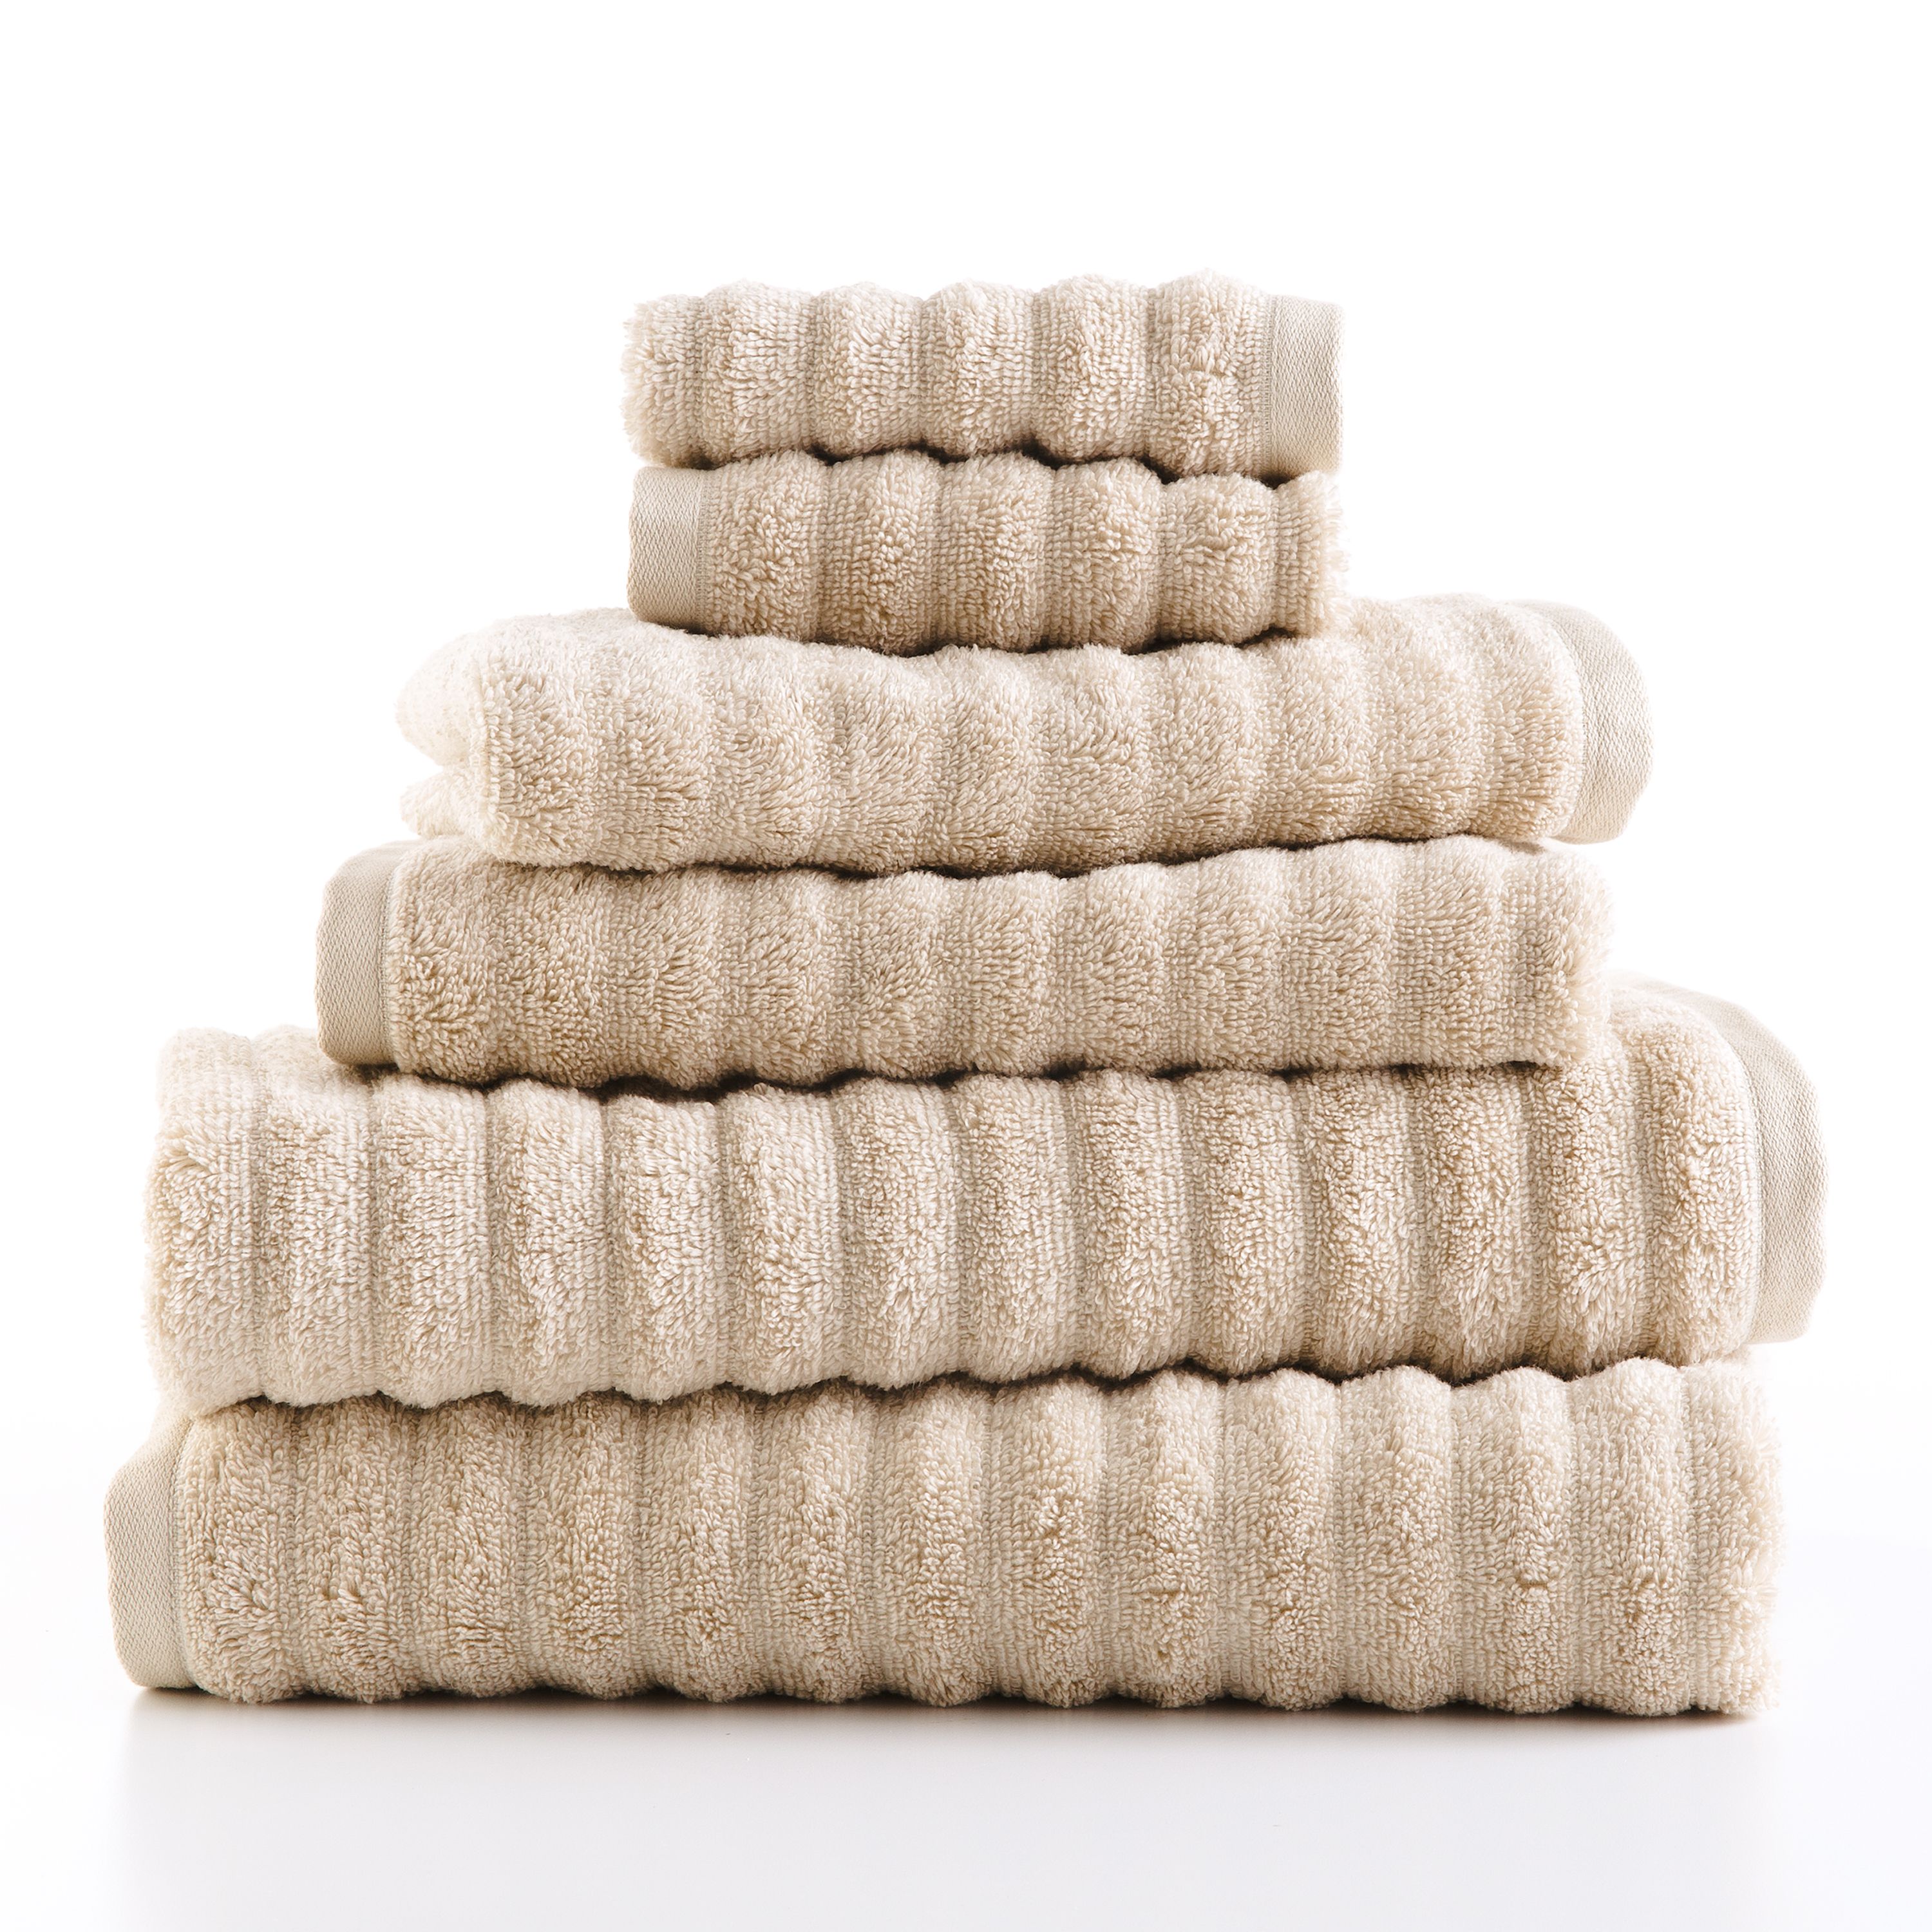 Mainstays 6 Piece Textures Cotton Bath Towel Set, Beige - image 1 of 9